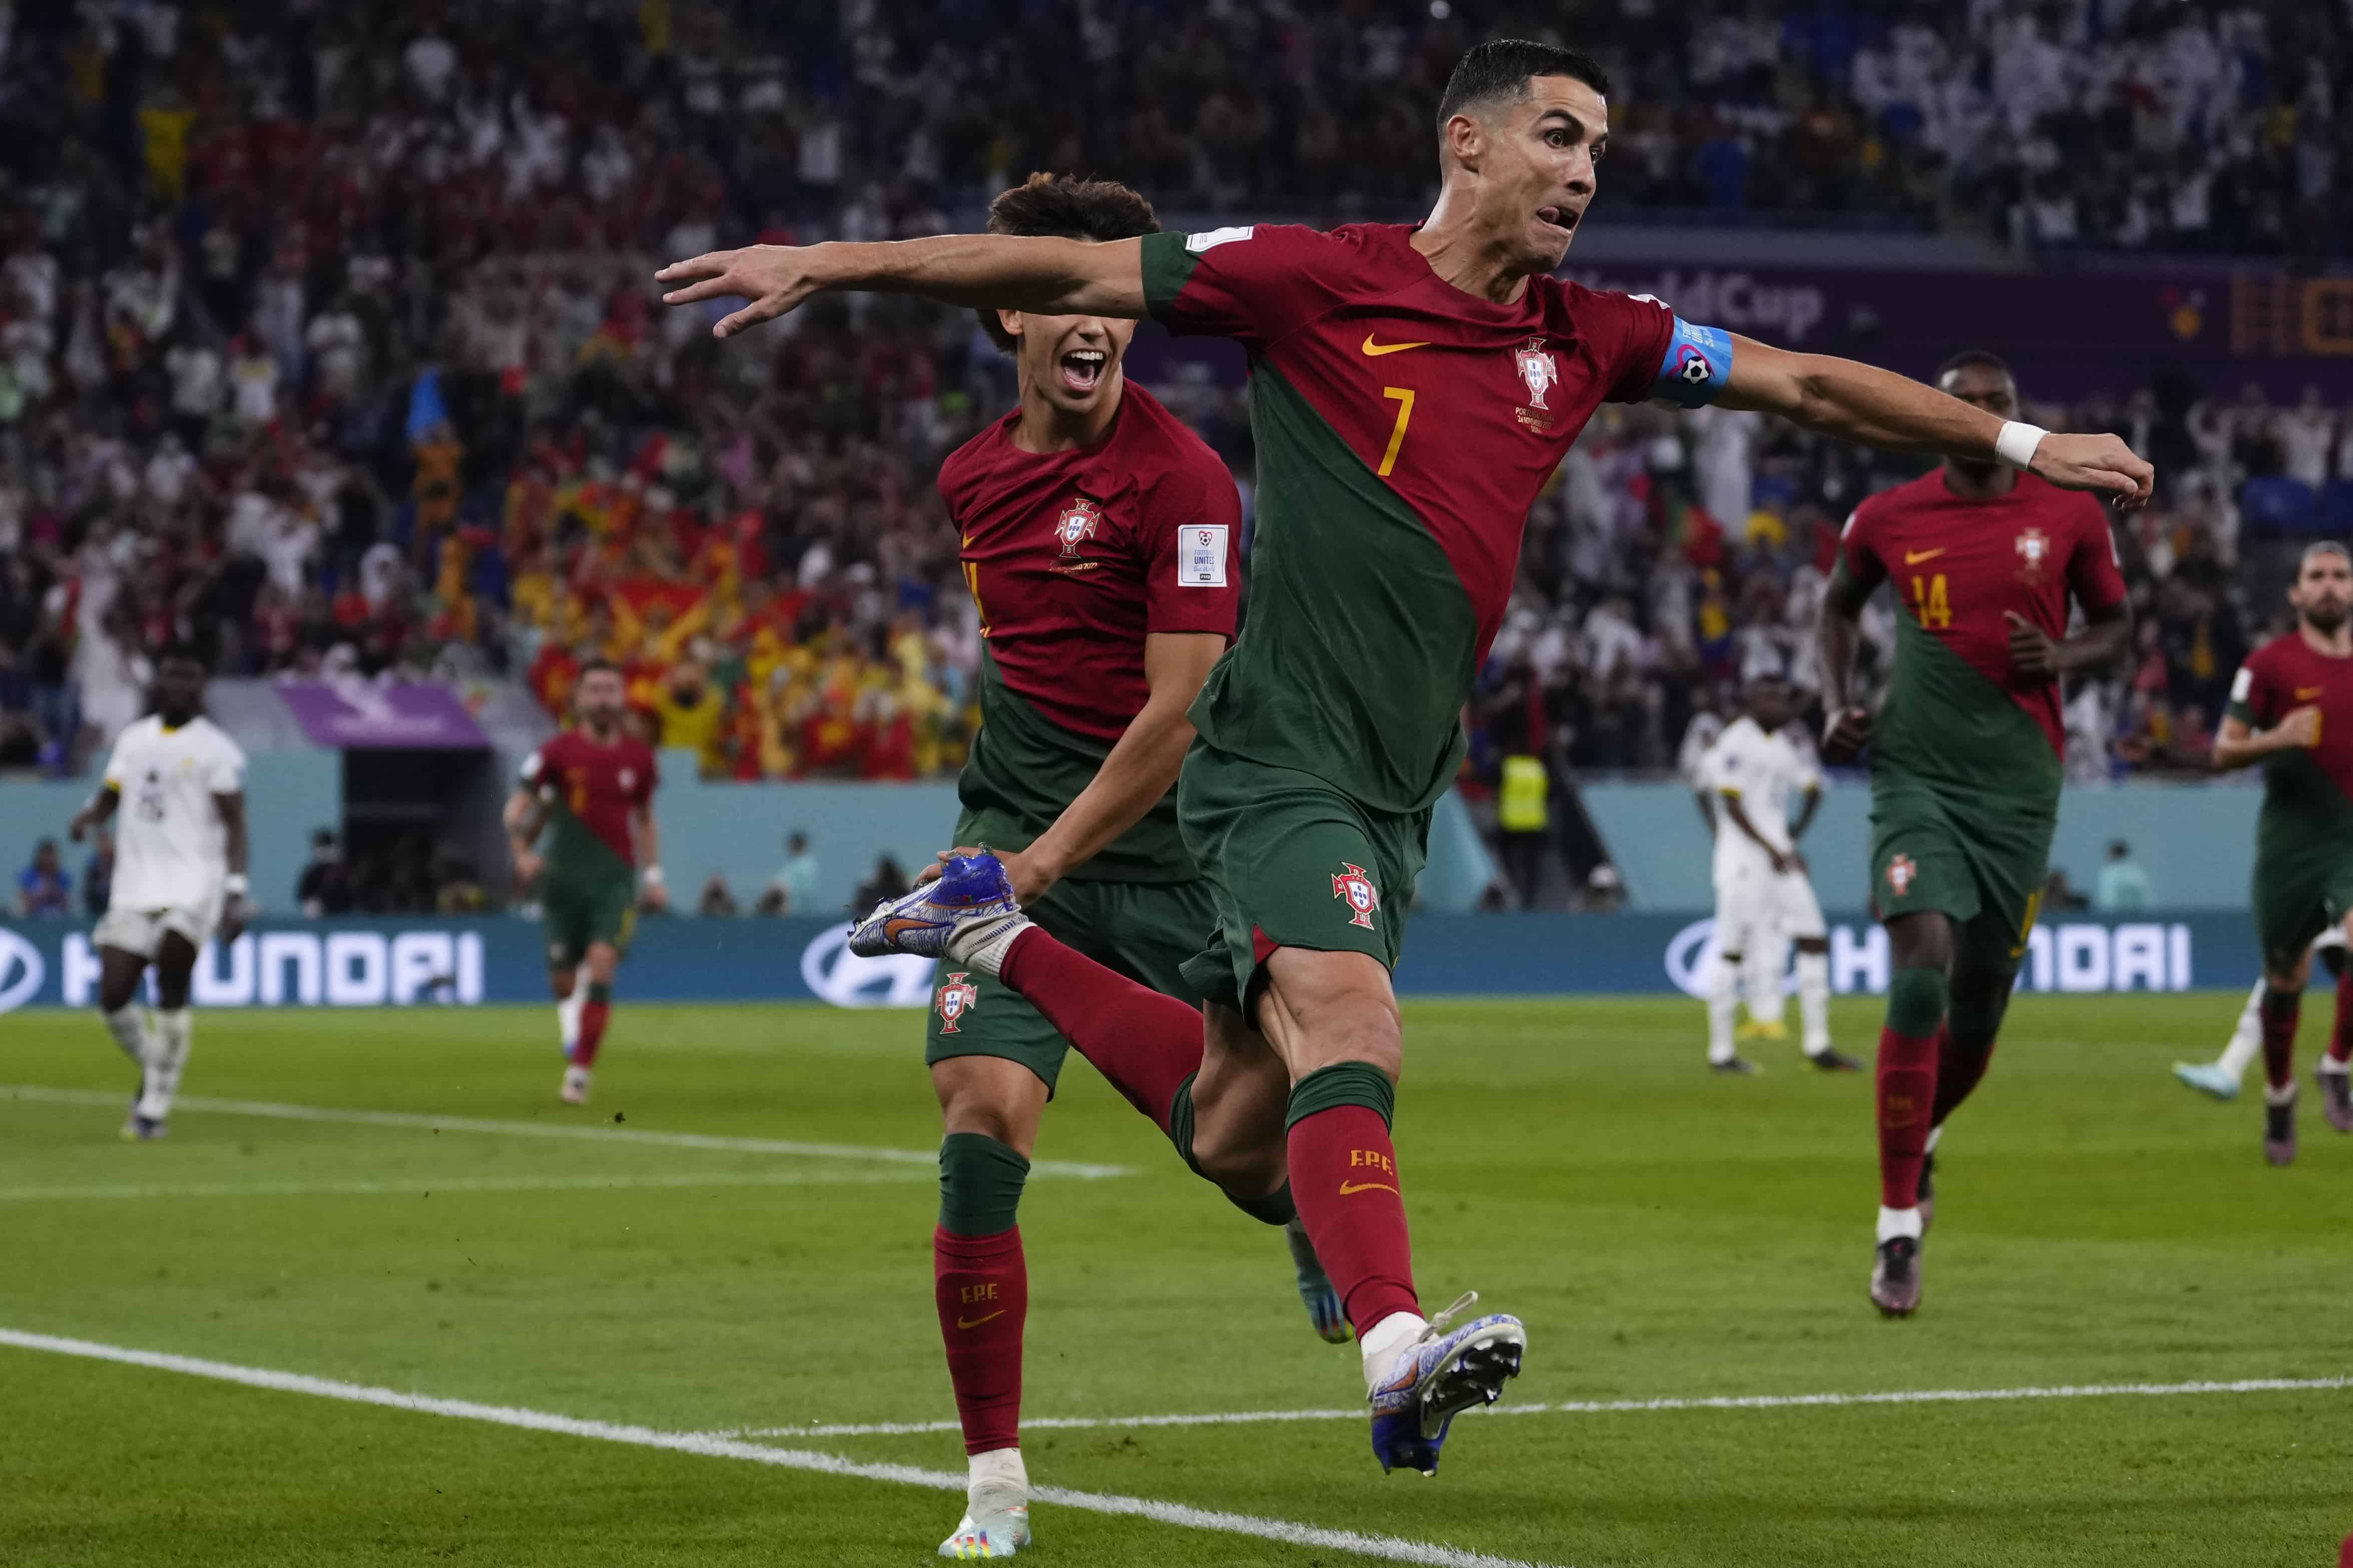 Cristiano Ronaldo de Portugal celebra después de anotar desde el punto de penalti el primer gol de su equipo contra Ghana durante un partido de fútbol del grupo H de la Copa Mundial en el Estadio 974 en Doha, Qatar, el jueves 24 de noviembre de 2022.